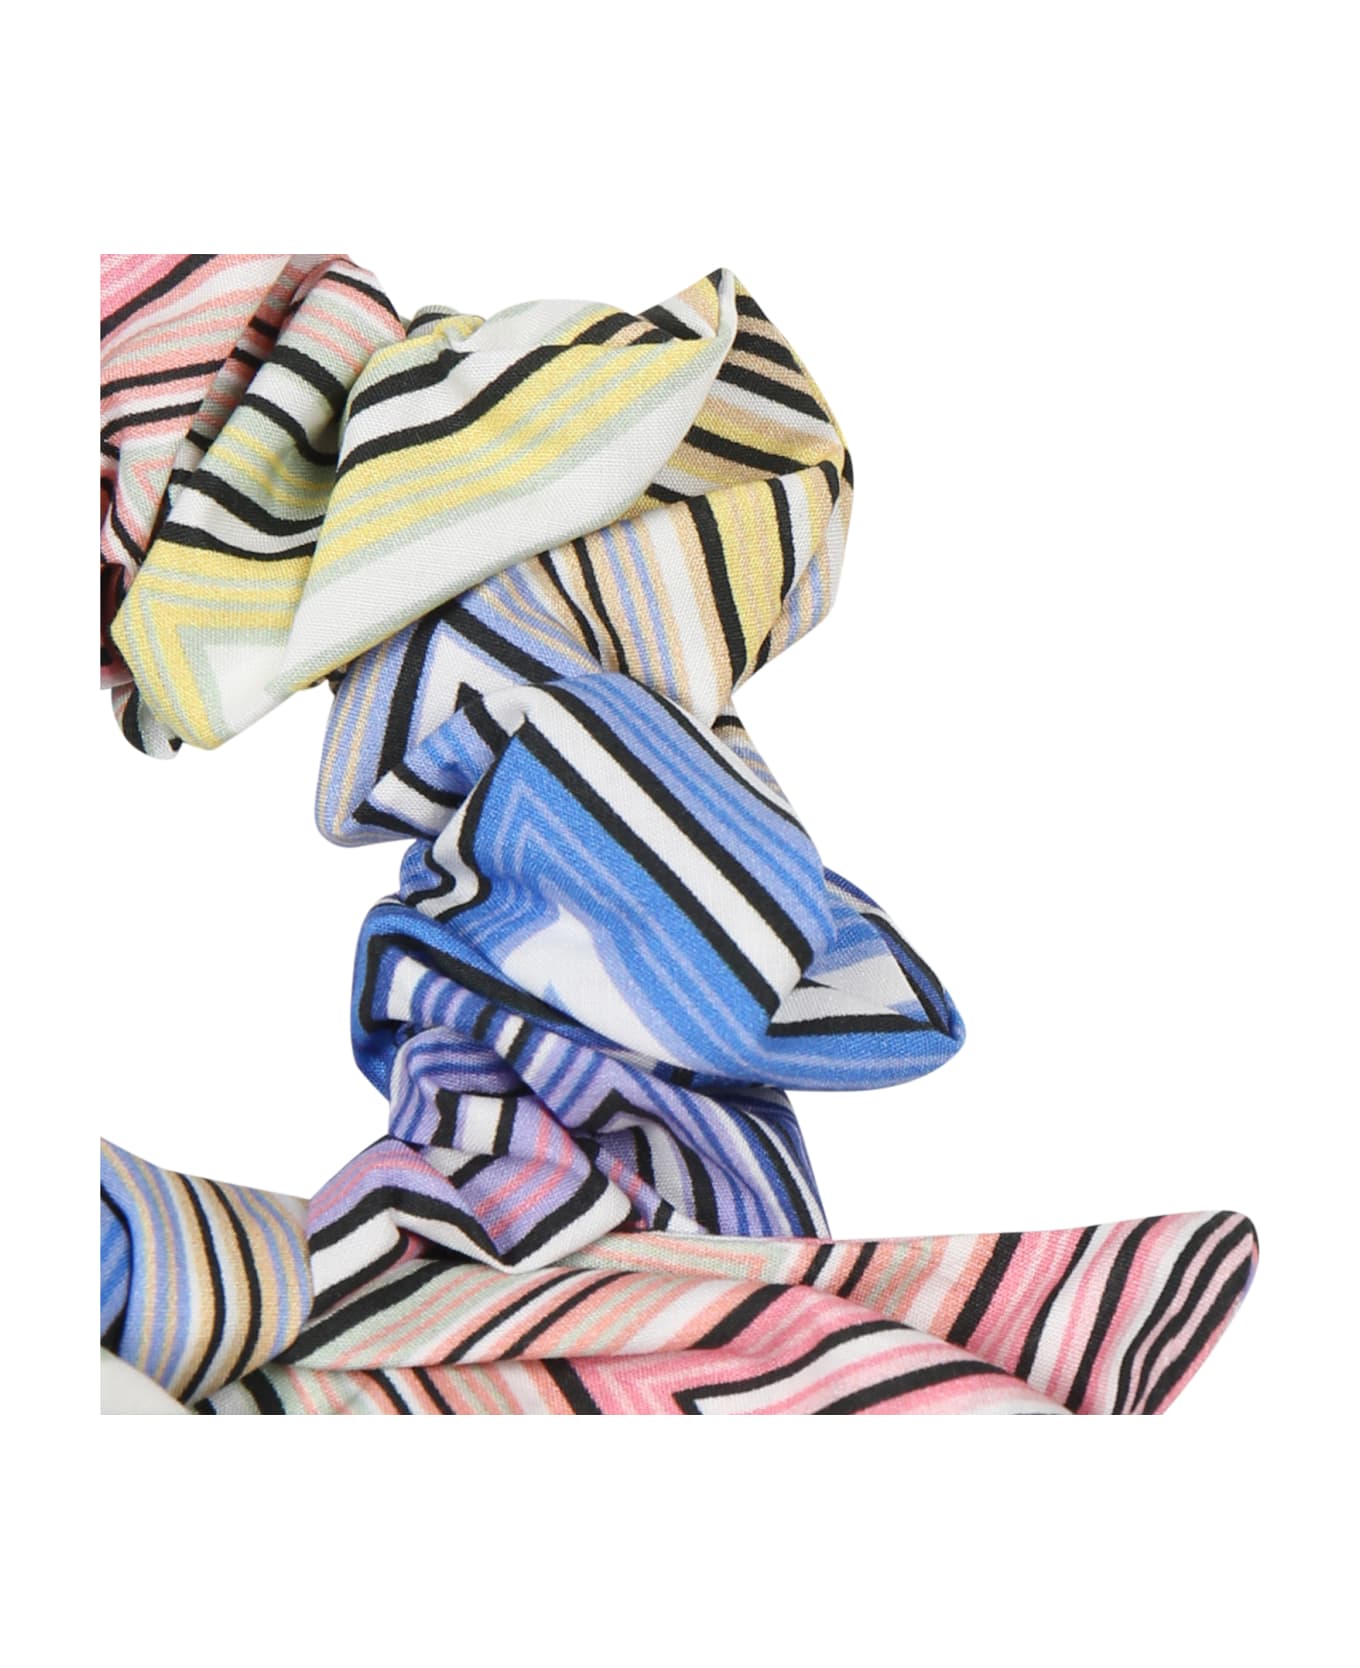 Missoni Multicolor Scrunchie For Girl With Chevron Pattern - Multicolor